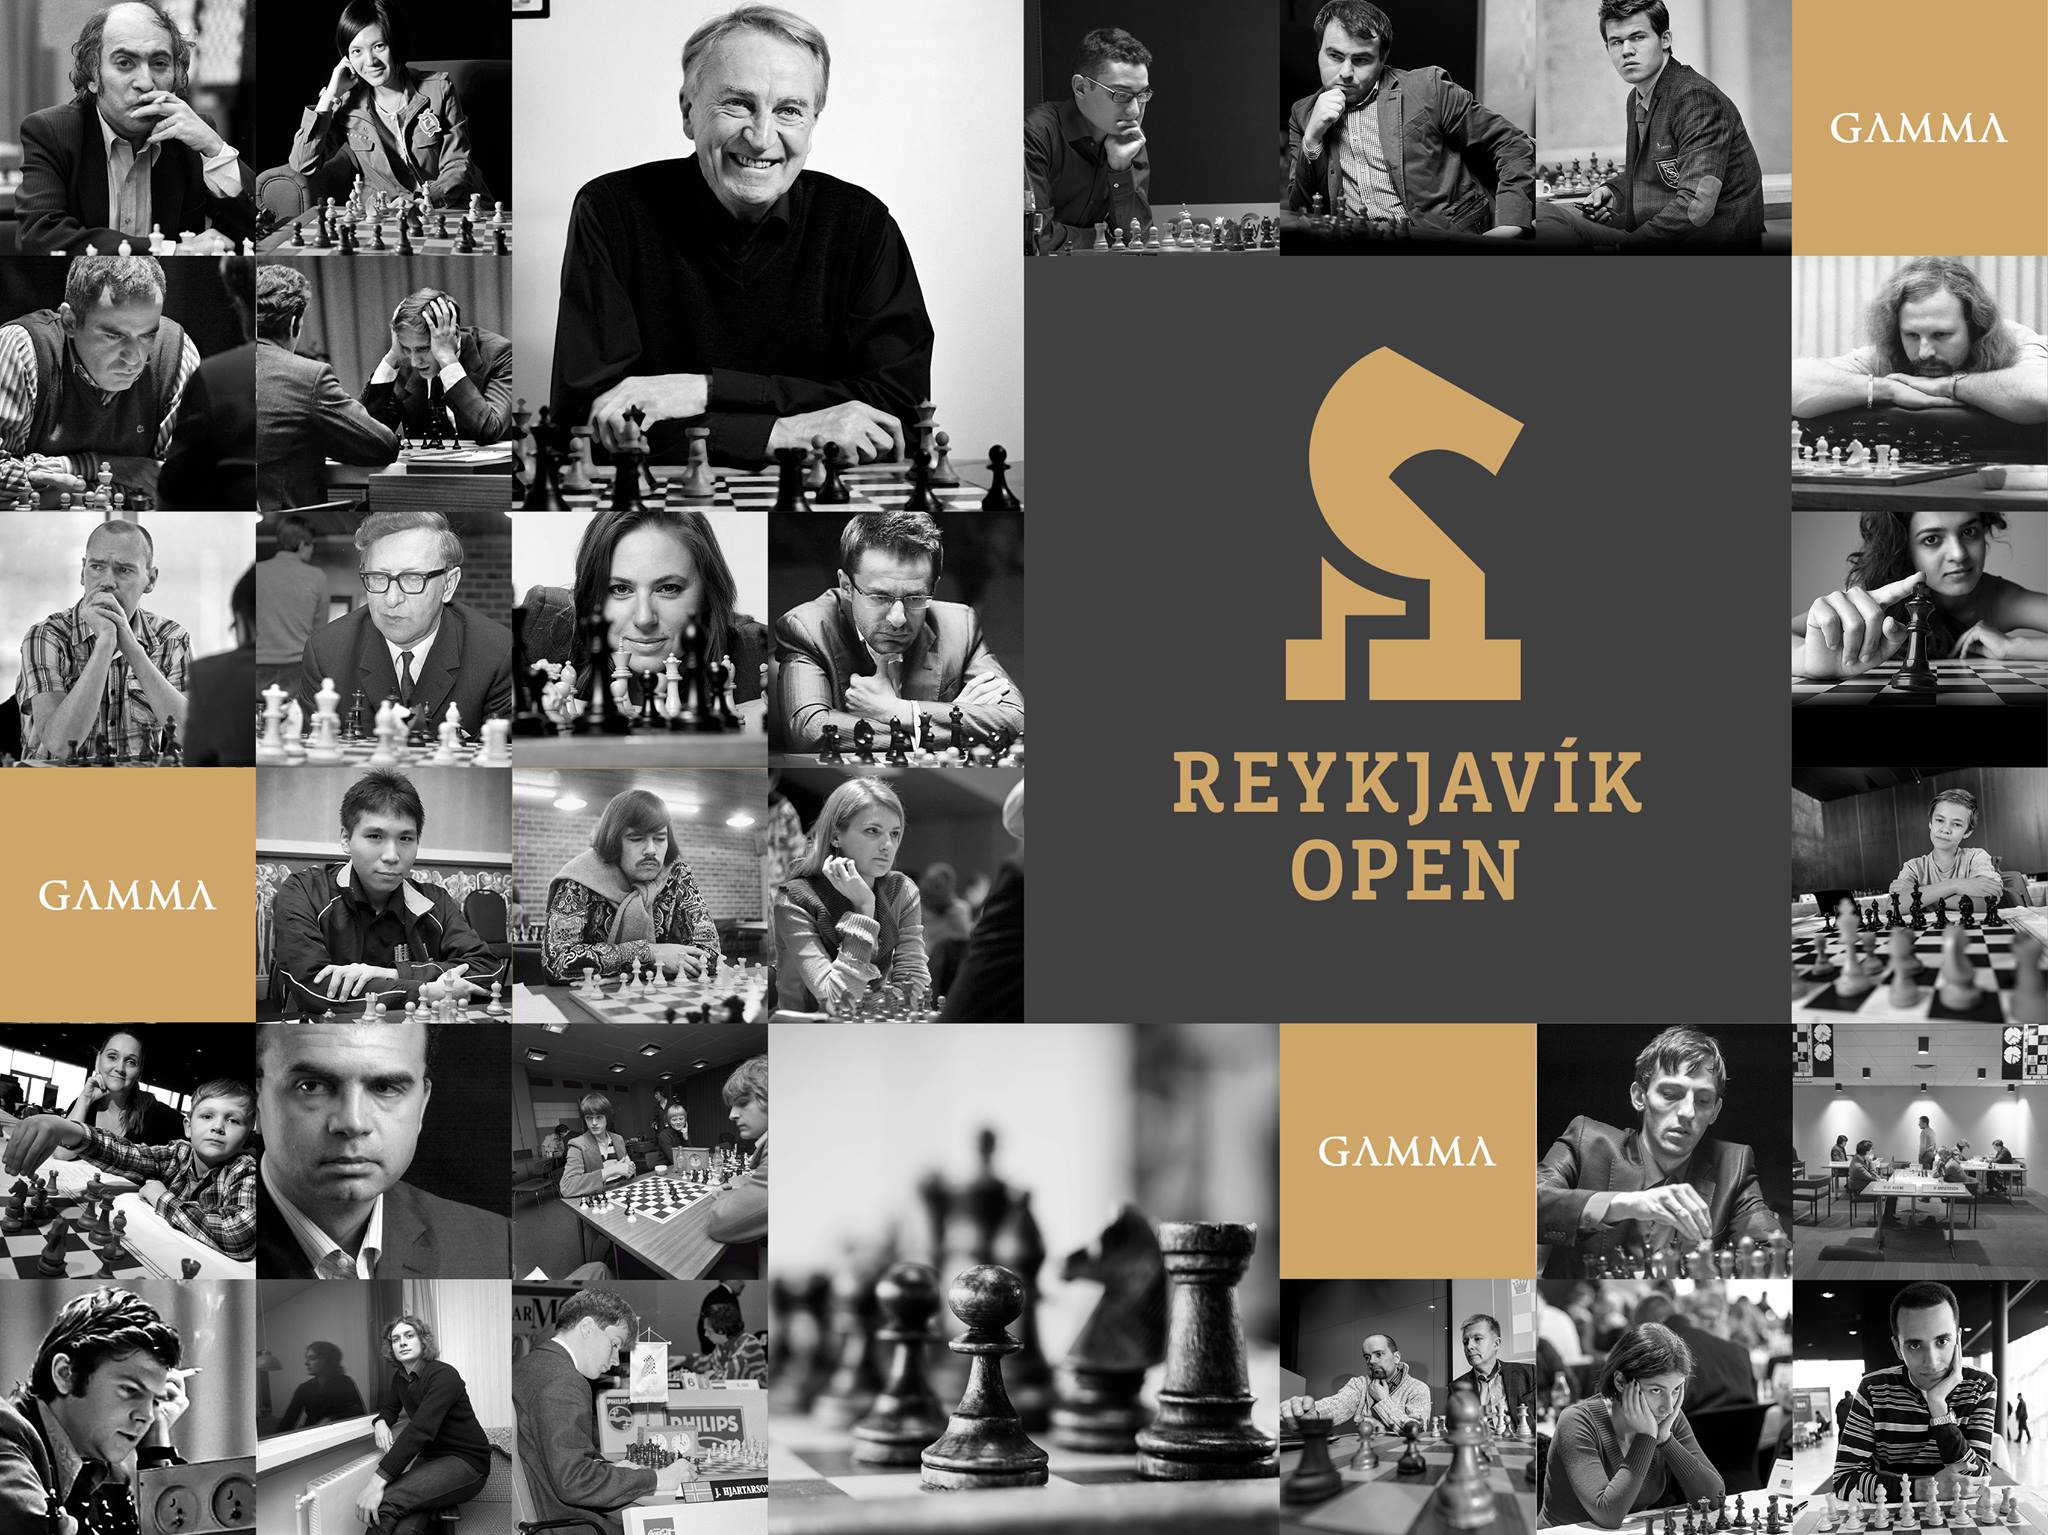 Constantin Lupulescu win the Reykjavik Open on tiebreaks